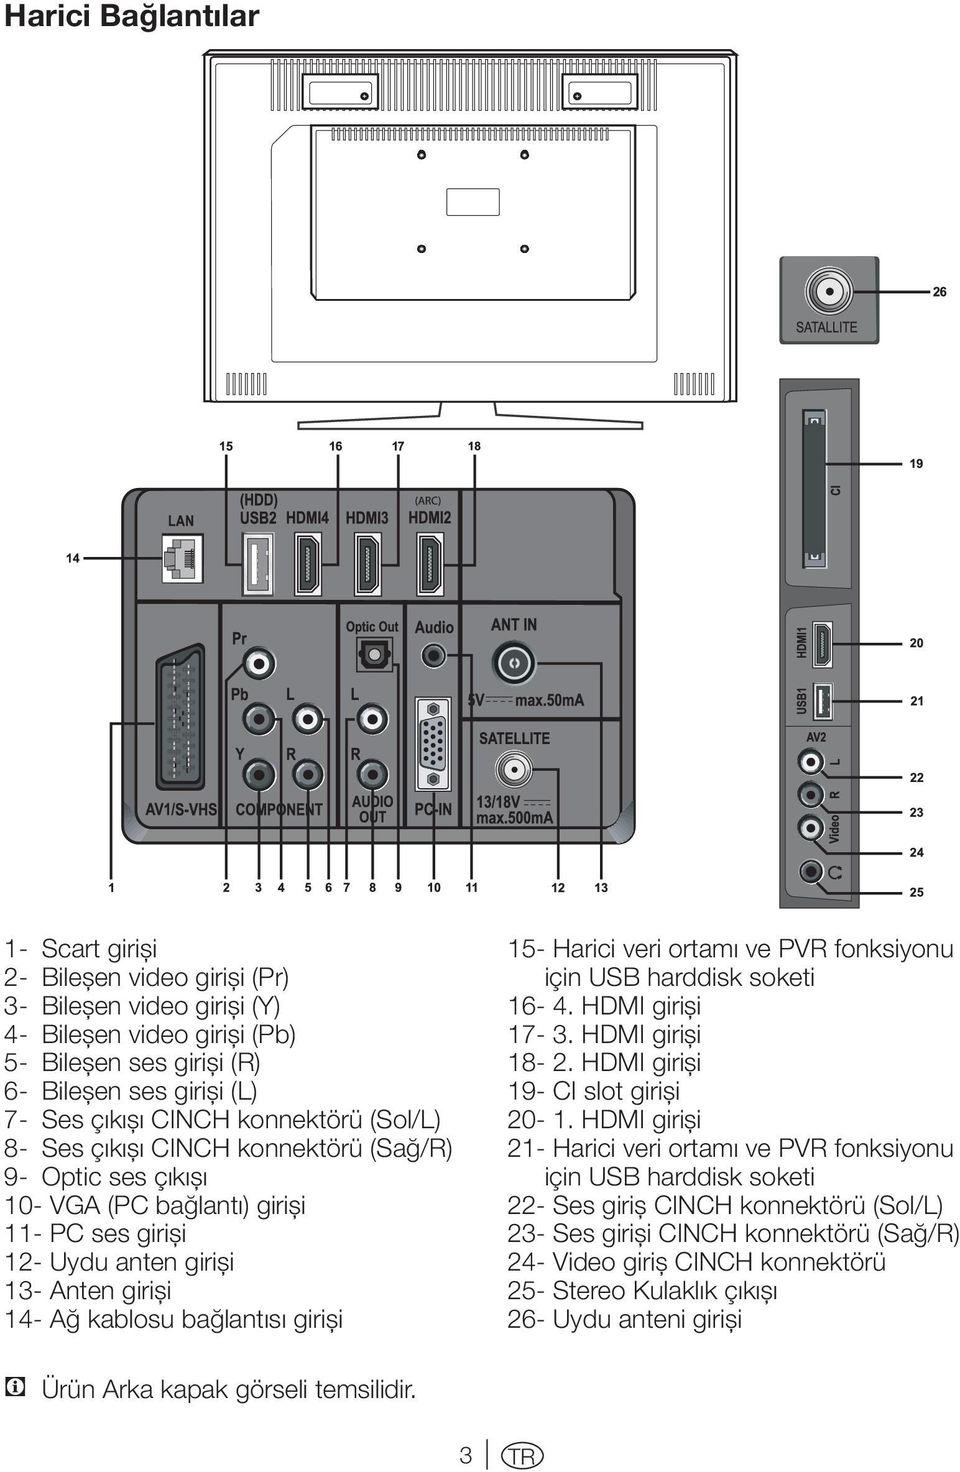 15- Harici veri ortamı ve PVR fonksiyonu için USB harddisk soketi 16-4. HDMI girişi 17-3. HDMI girişi 18-2. HDMI girişi 19- CI slot girişi 20-1.